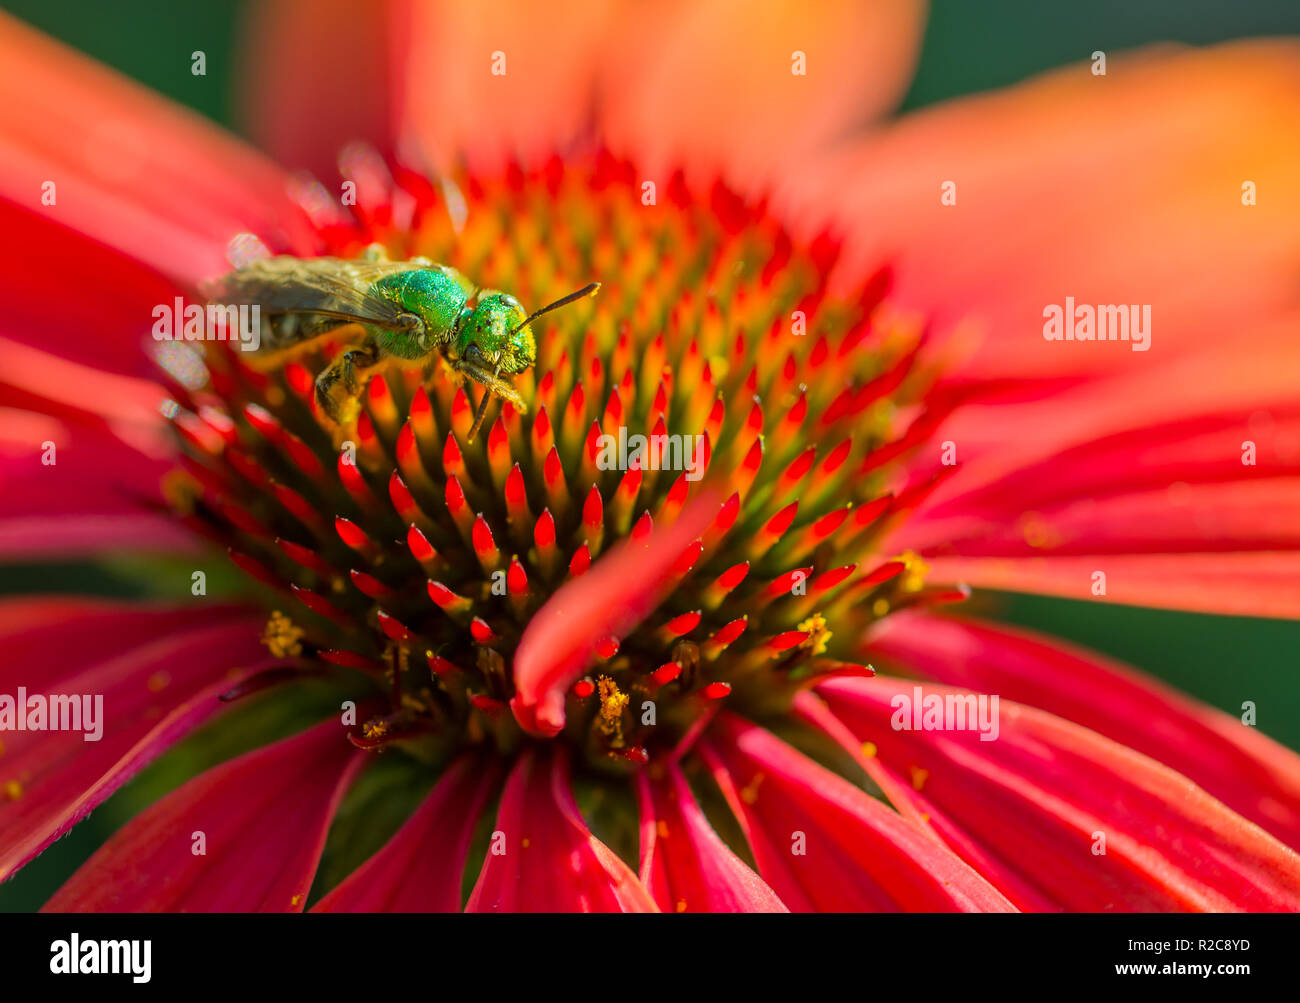 Un verde metálico de abeja (sudor) Agapostemon grooming el polen de las antenas, en un rojo brillante flor de equinácea. Foto de stock